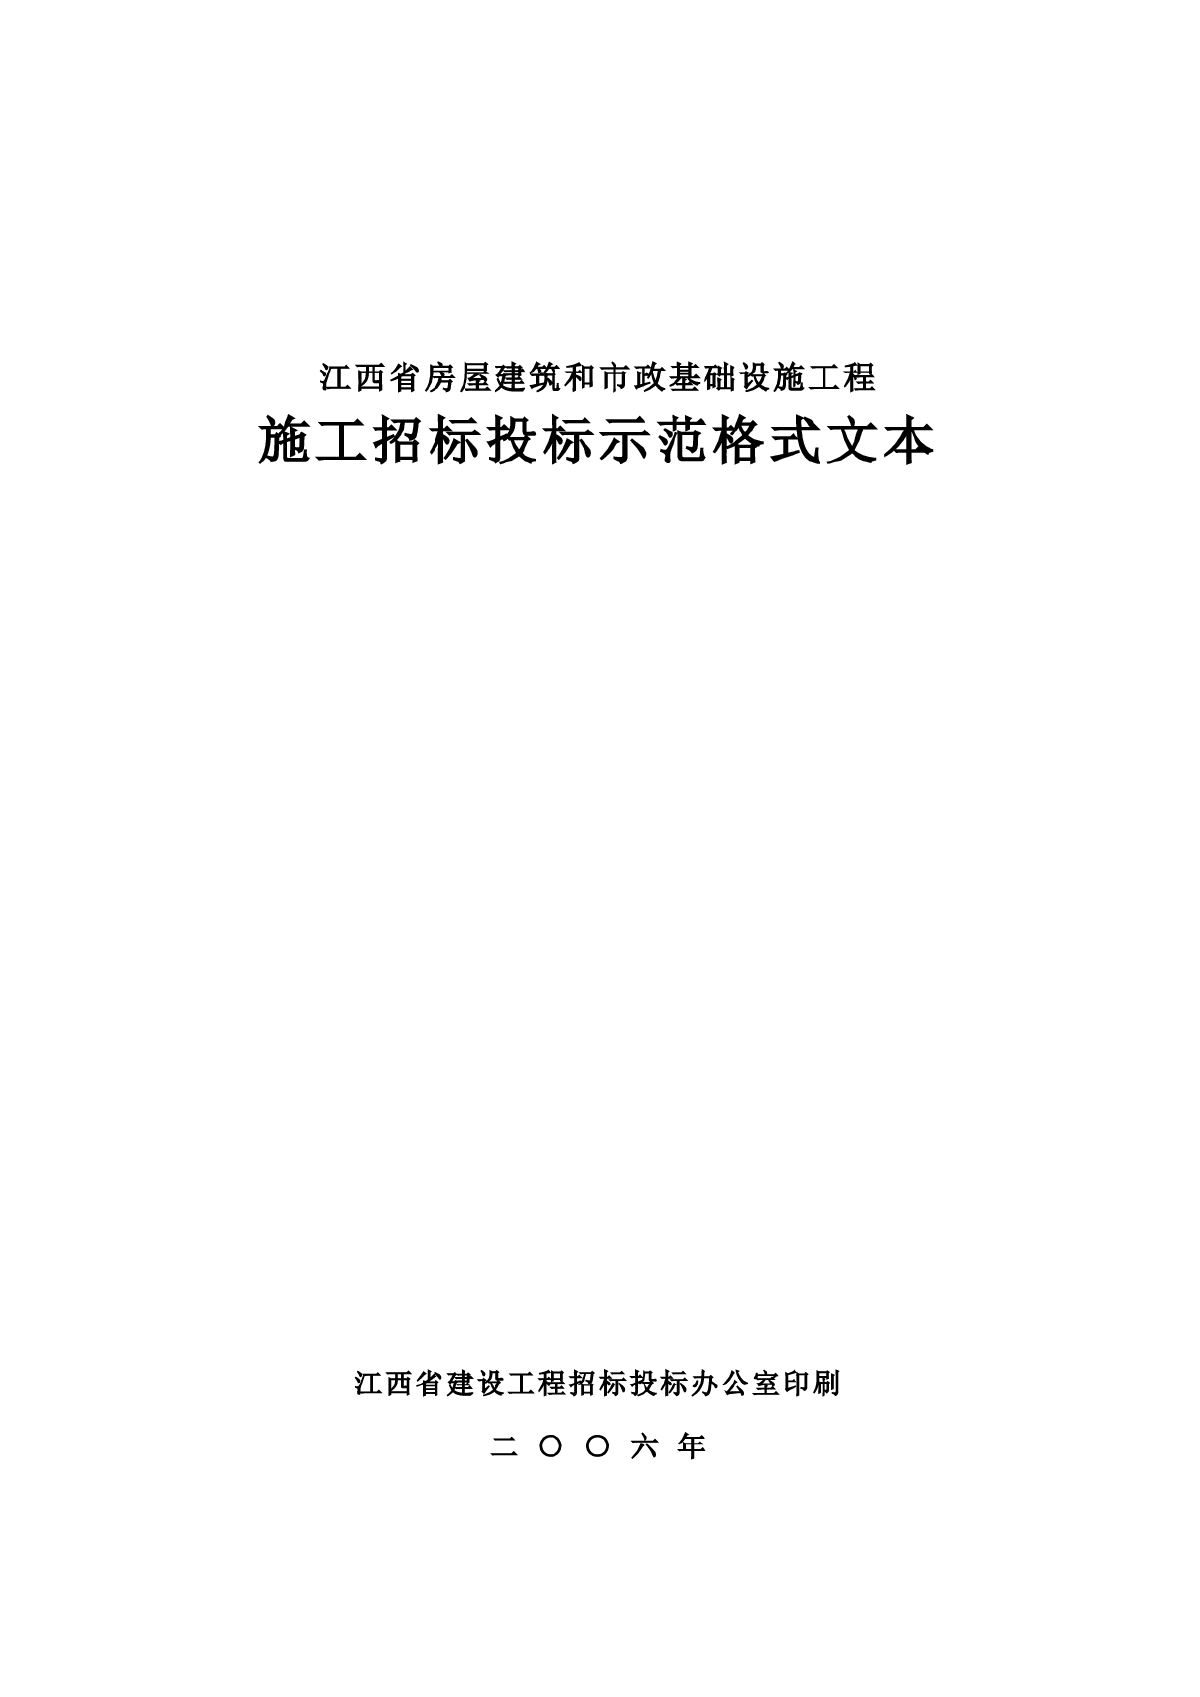 江西省招标投标示范格式文本(2006年)